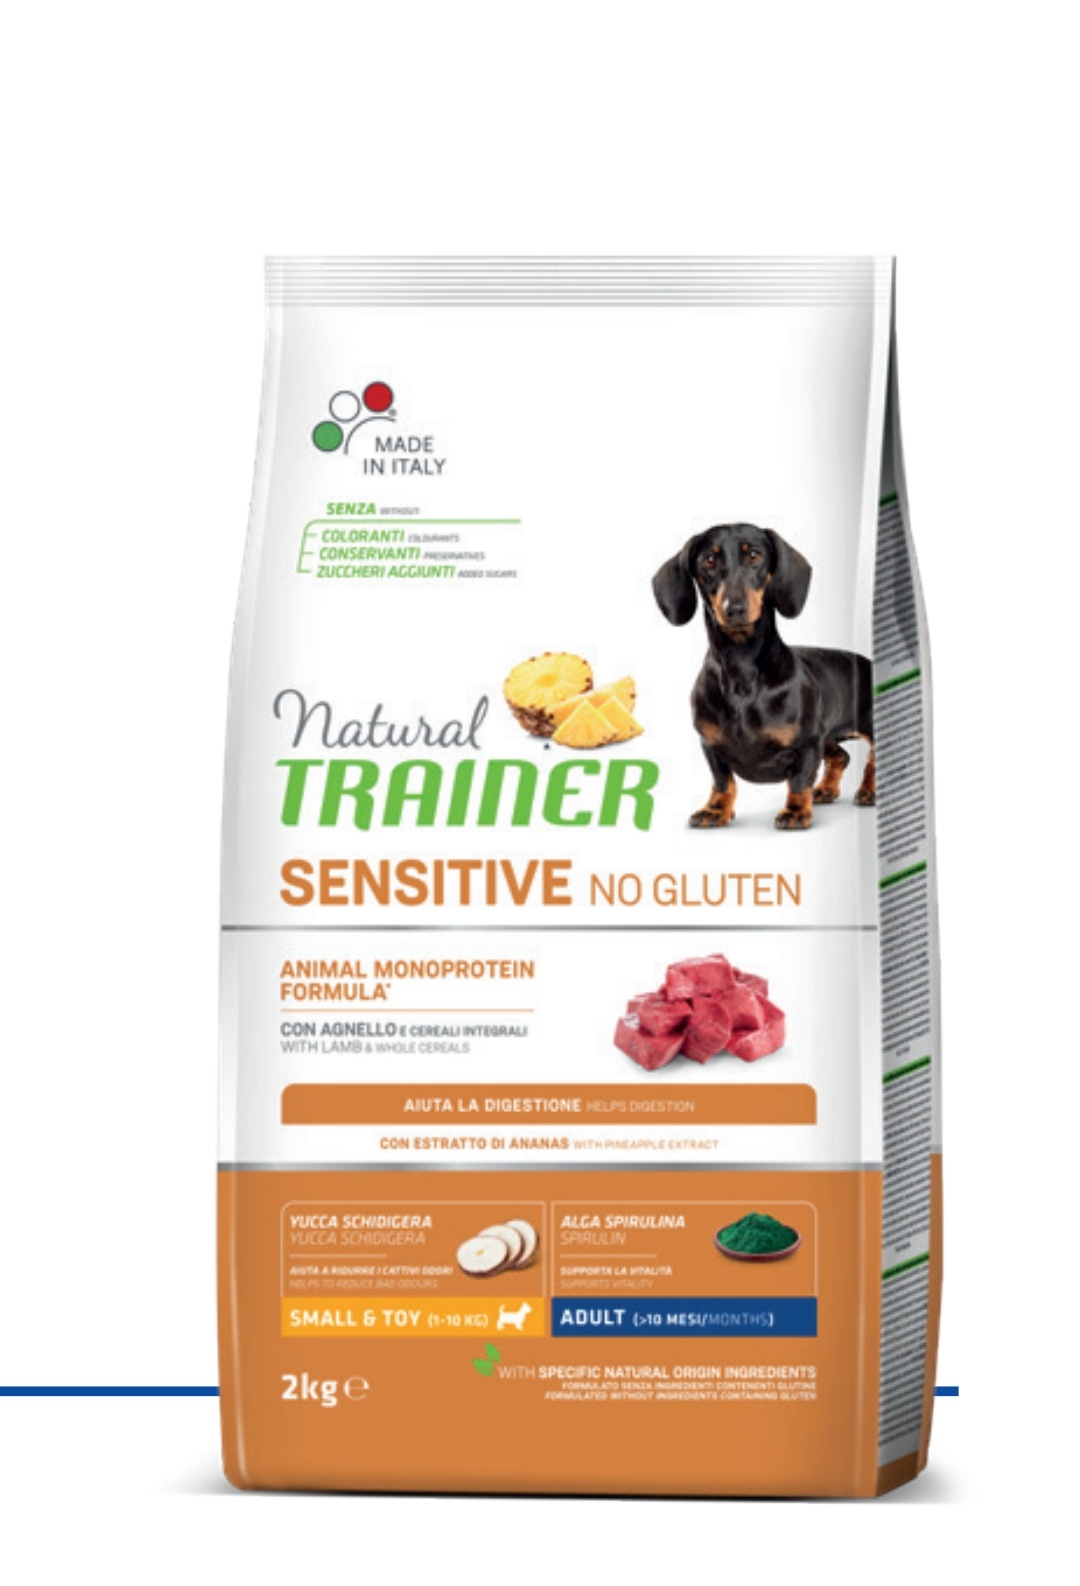 Trainer Sensitive No Gluten Adult (>10 mesi)  con Agnello e Cereali Integrali 2kg